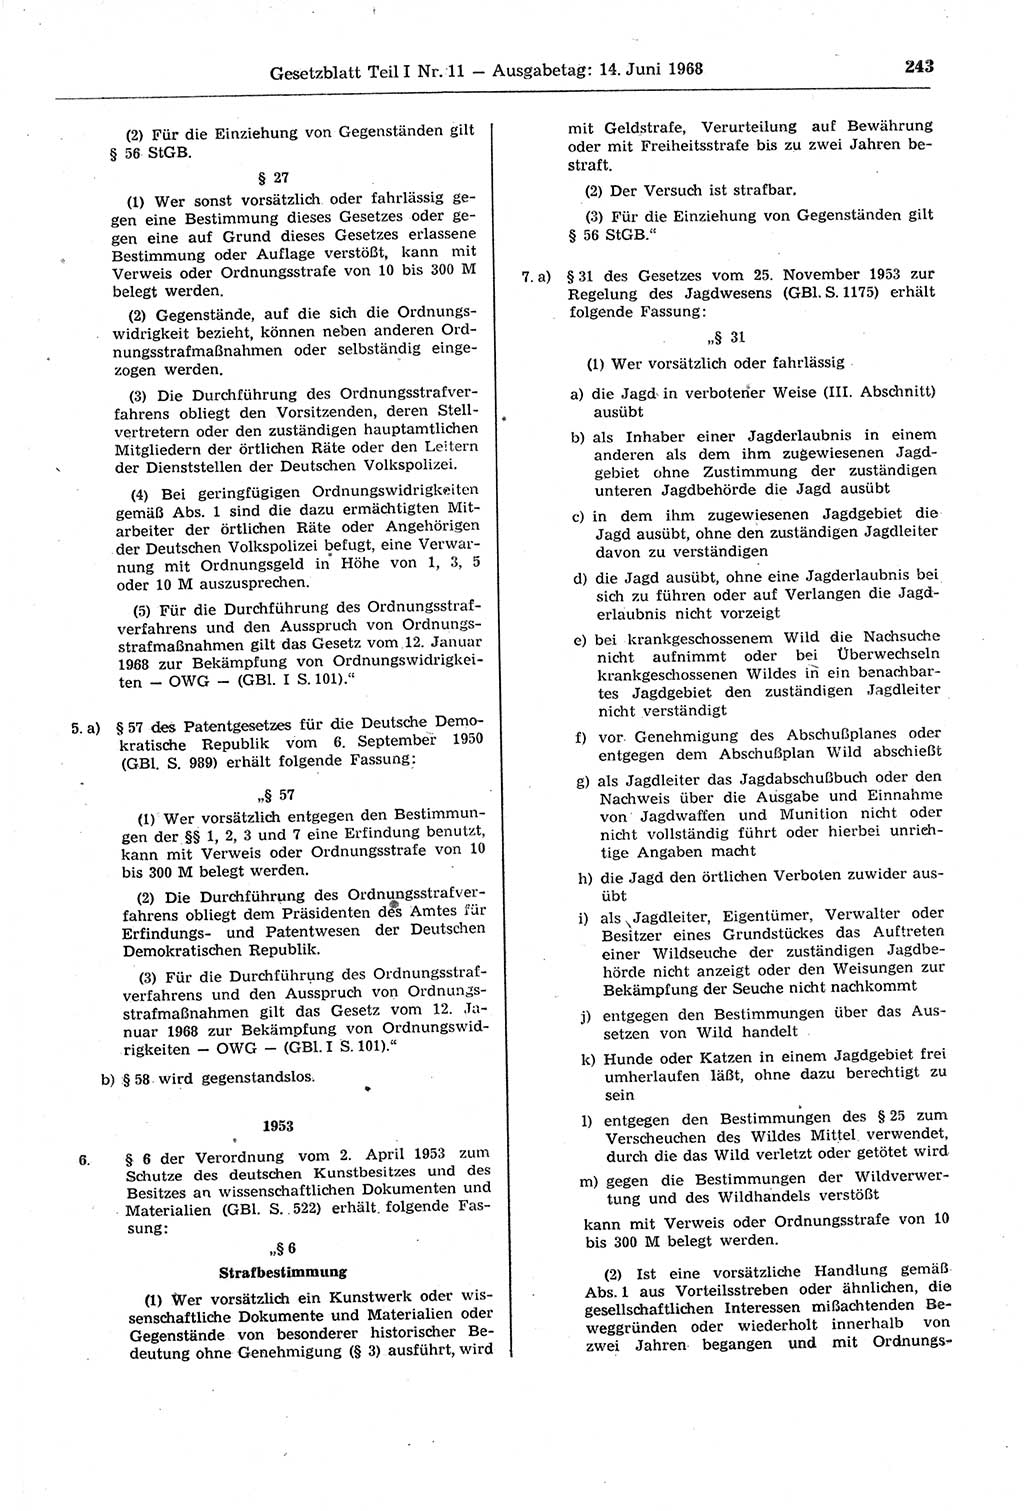 Gesetzblatt (GBl.) der Deutschen Demokratischen Republik (DDR) Teil Ⅰ 1968, Seite 243 (GBl. DDR Ⅰ 1968, S. 243)